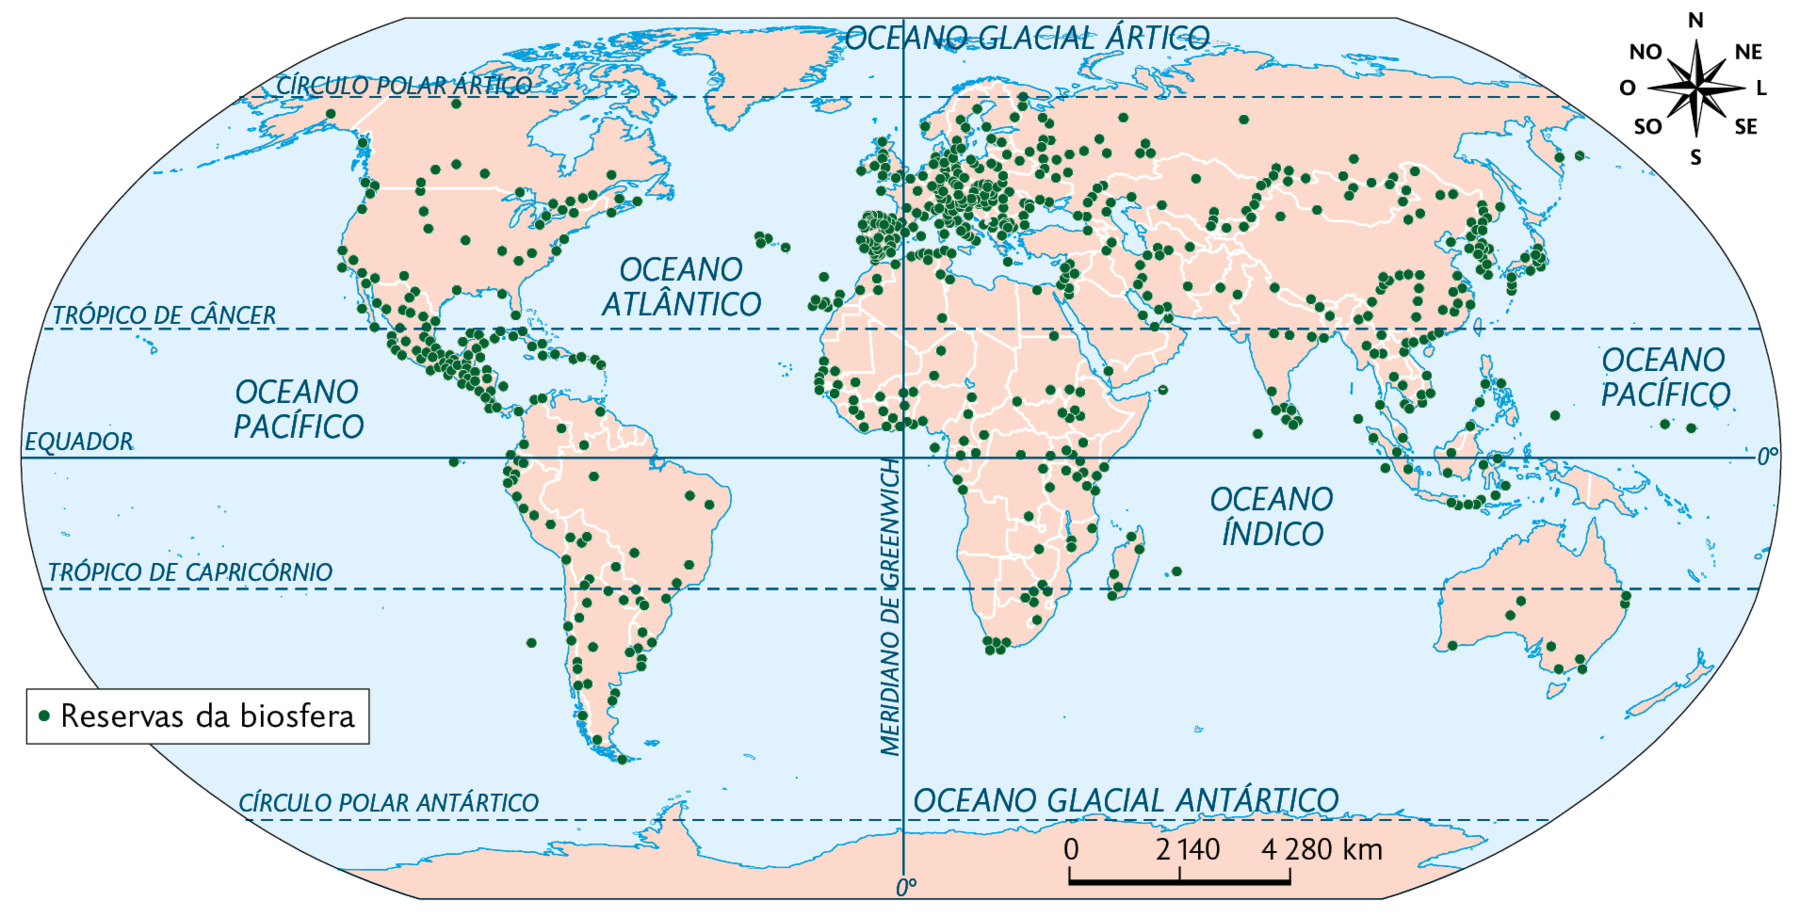 Mapa. Reservas da biosfera no mundo (2020). 
Reservas da biosfera: norte, oeste, leste e em maior quantidade no sul da América do Norte; toda a América Central, áreas dispersas em toda a América do Sul, grande parte da Europa, áreas dispersas no norte, oeste, leste e sul da África; sul e sudeste da Ásia, áreas no sul da Oceania. No canto superior direito, a rosa dos ventos, na parte inferior, a escala: 2140 quilômetros por centímetro.